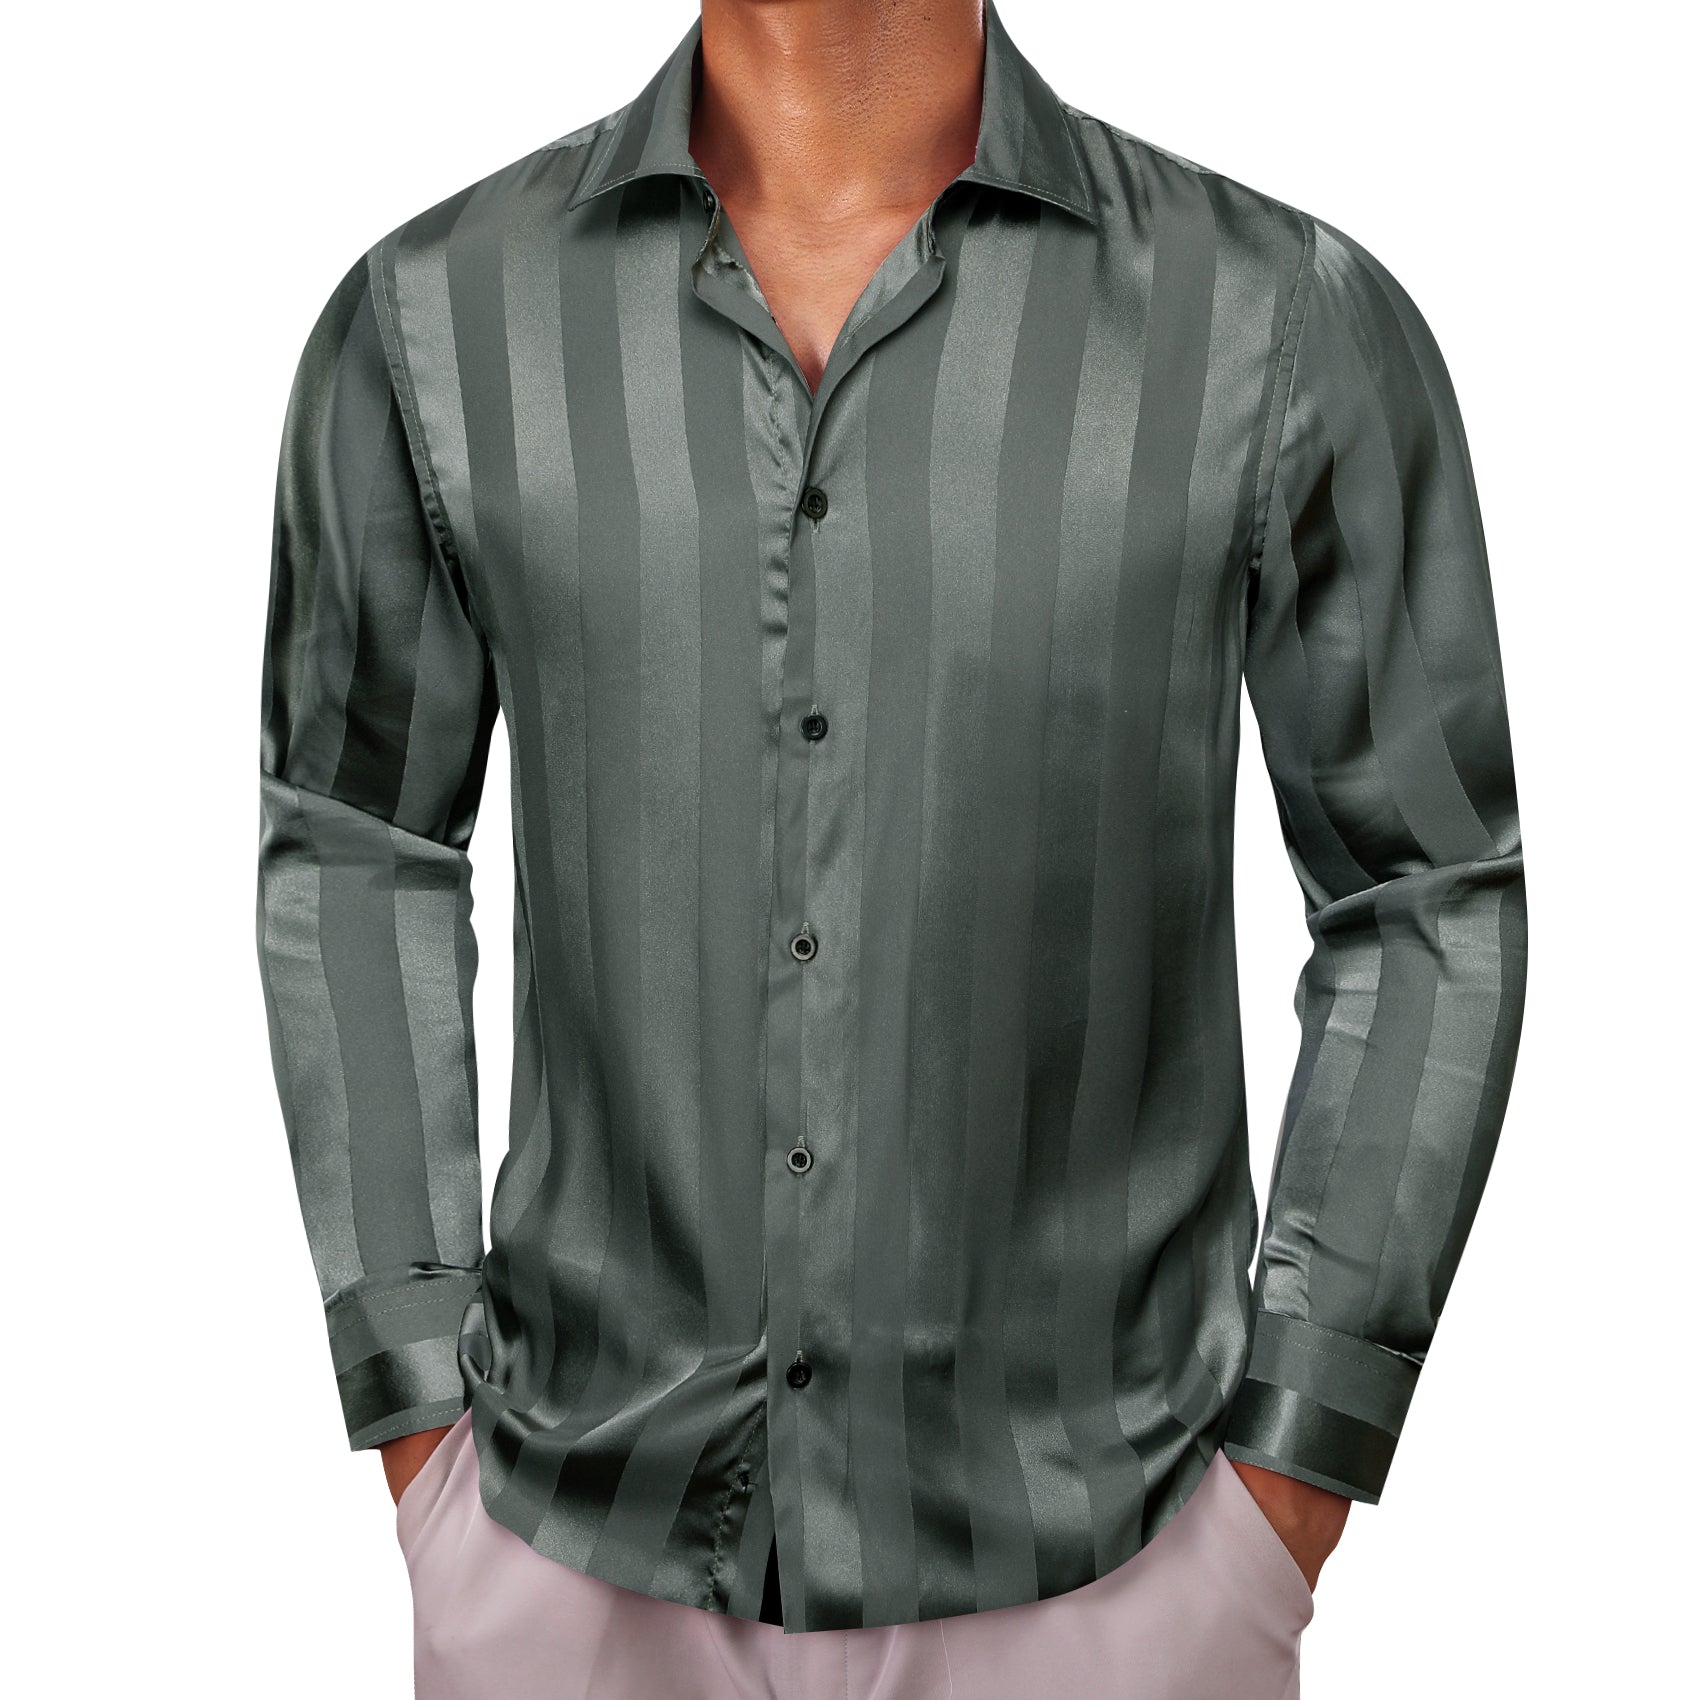 Barry.wang Long Sleeve Shirt Olive Striped Silk Men's Shirt